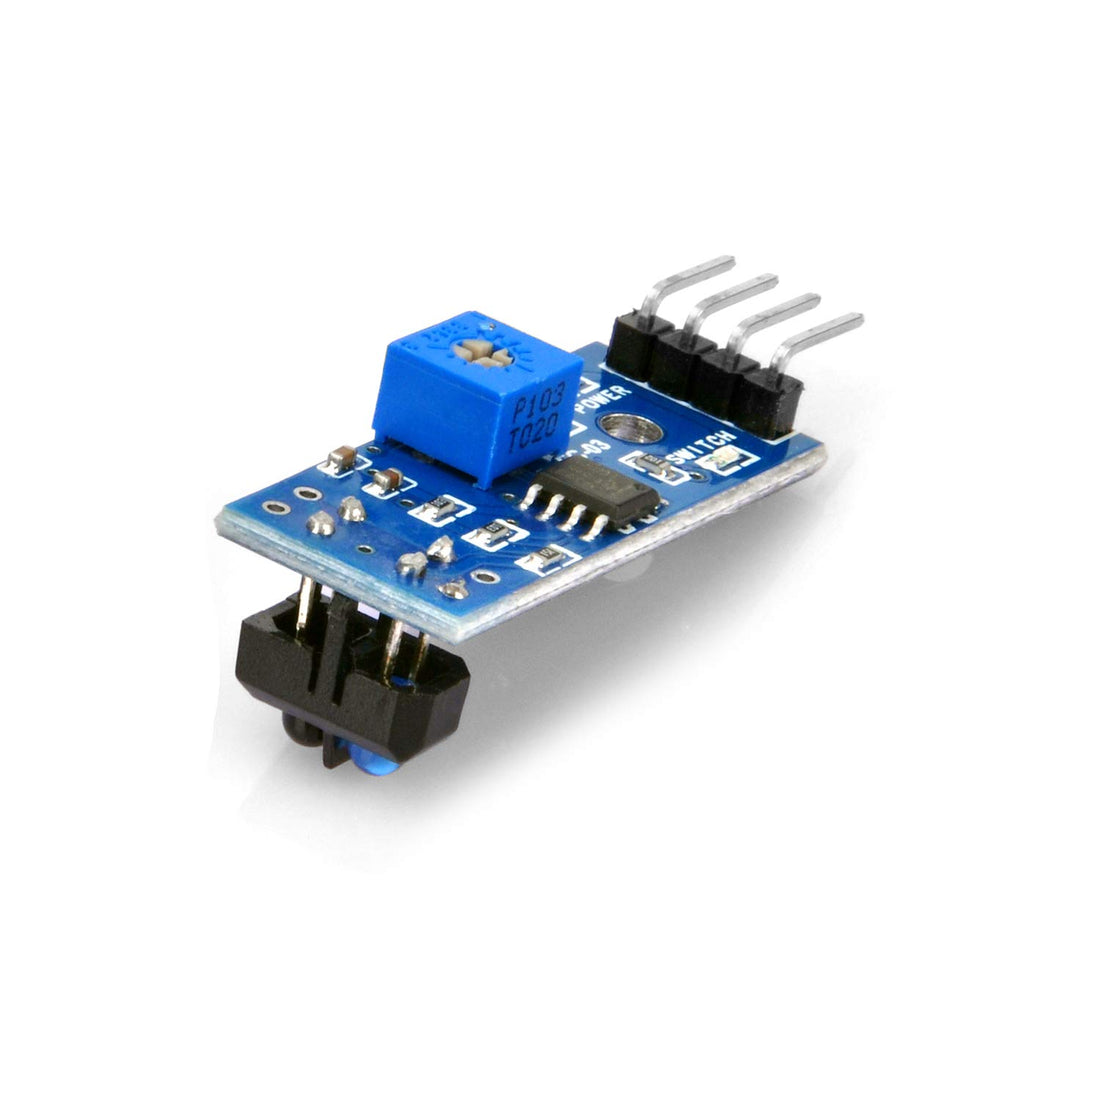 OSOYOO 10 Stück TCRT5000 IR-Lichtschranken-Sperrlinien-Track-Sensormodul für Arduino Smart Car Robot mit 5 8-poligen Überbrückungsdrähten von Buchse zu Buchse